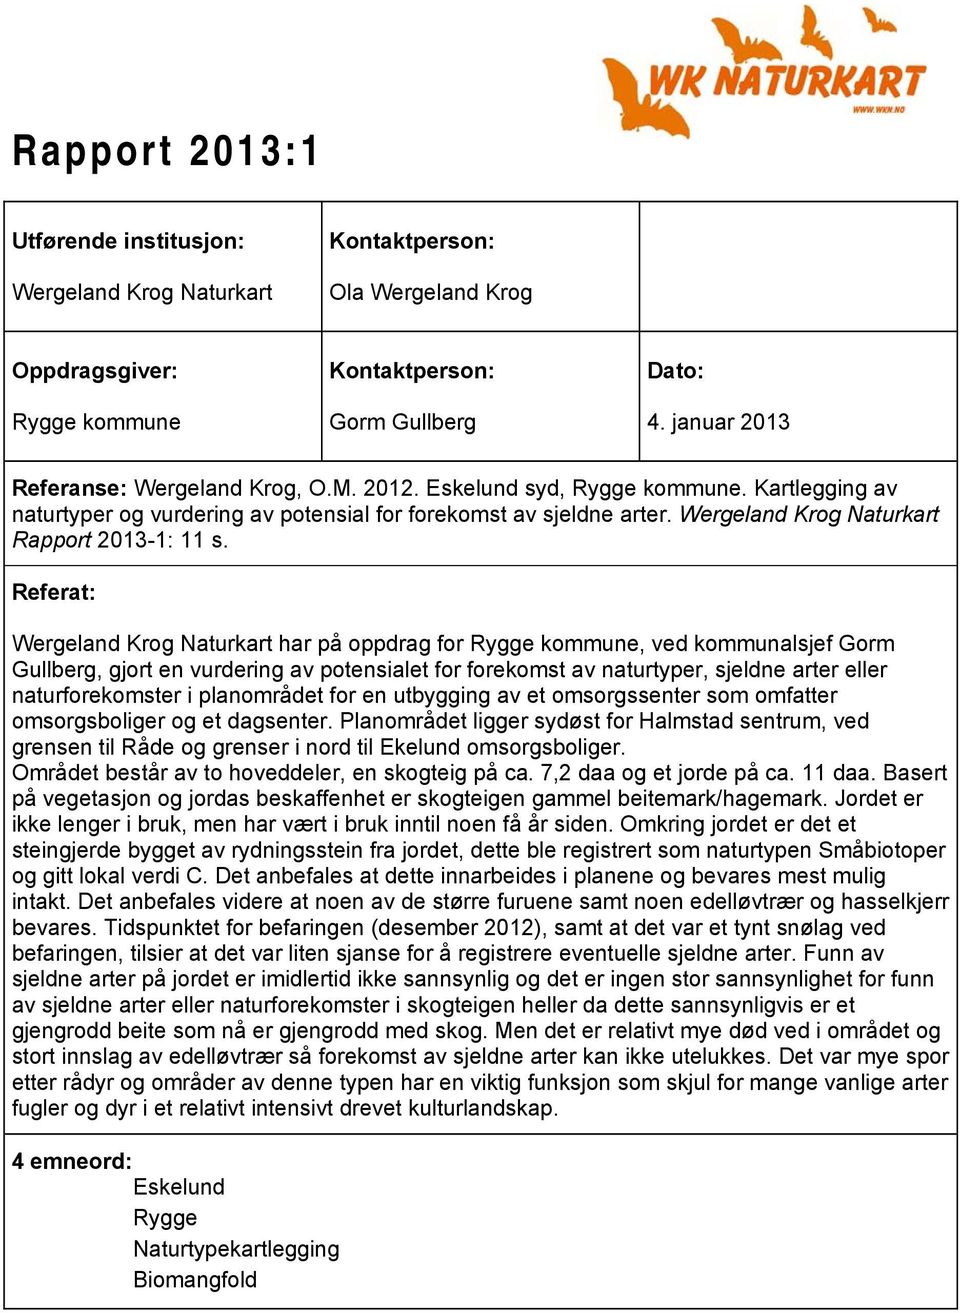 Referat: WKN notat 2010:5 2010:3 Wergeland Krog Naturkart har på oppdrag for Rygge kommune, ved kommunalsjef Gorm Gullberg, gjort en vurdering av potensialet for forekomst av naturtyper, sjeldne